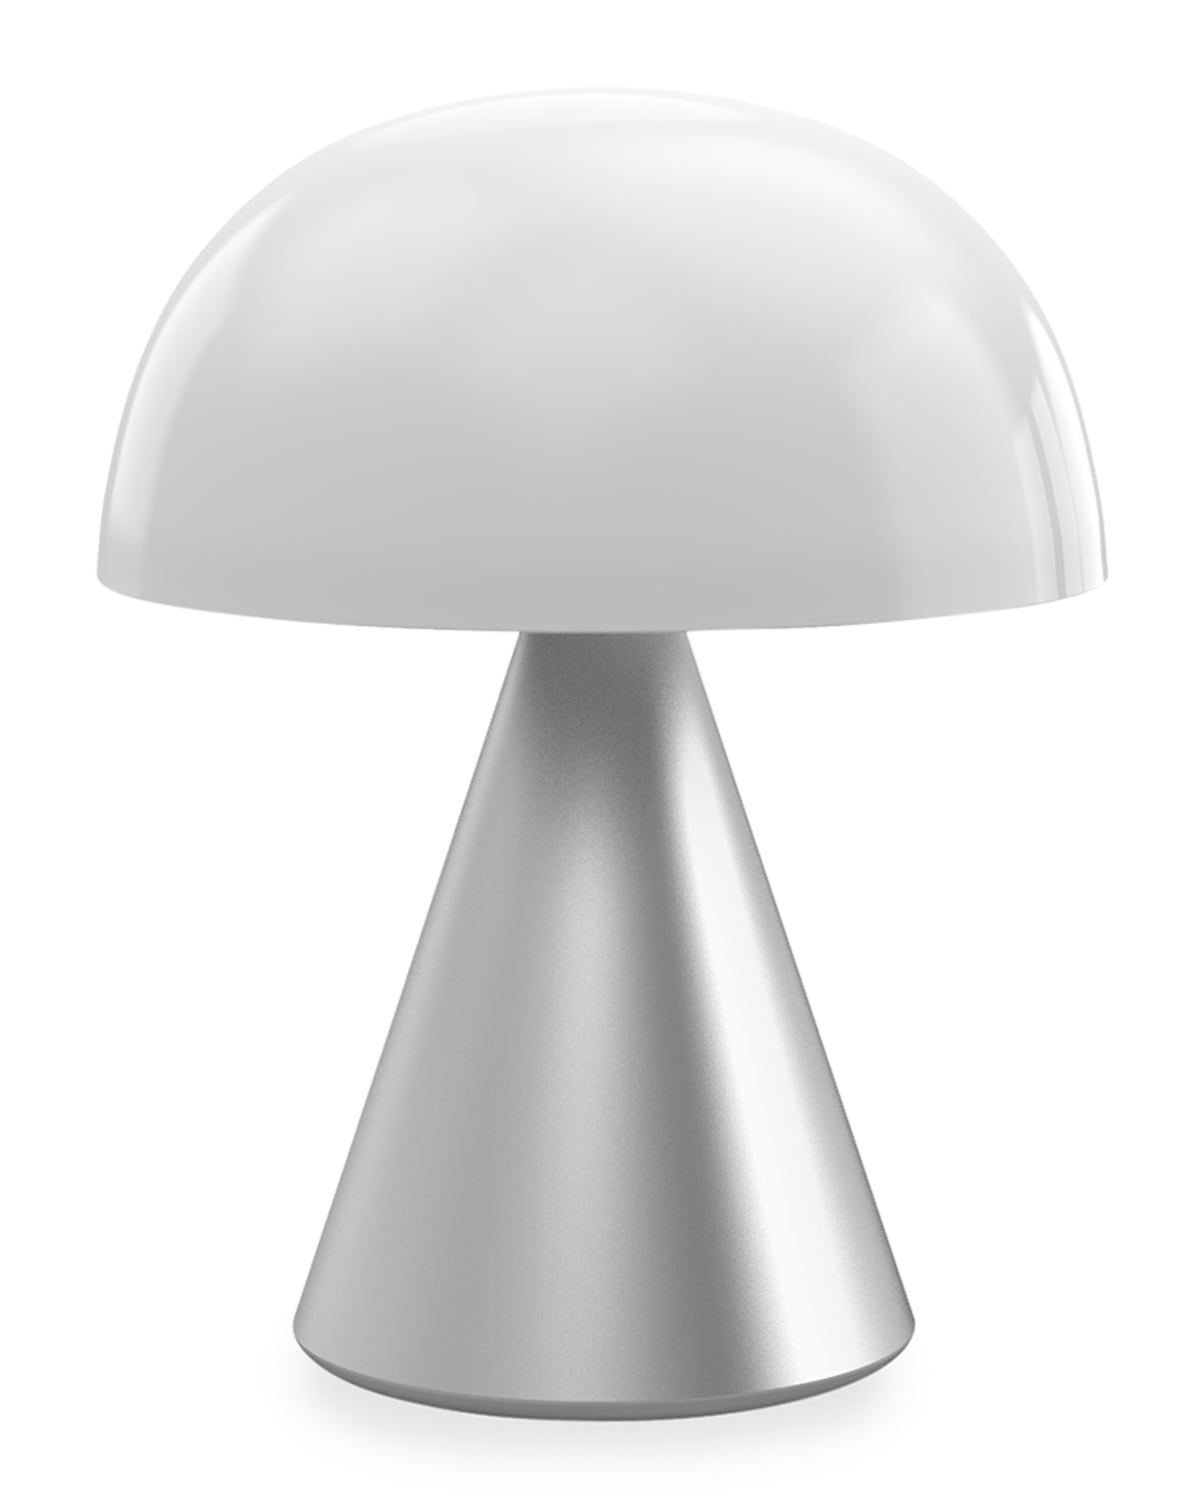 Lexon Design Mina L - Large Portable LED Lamp